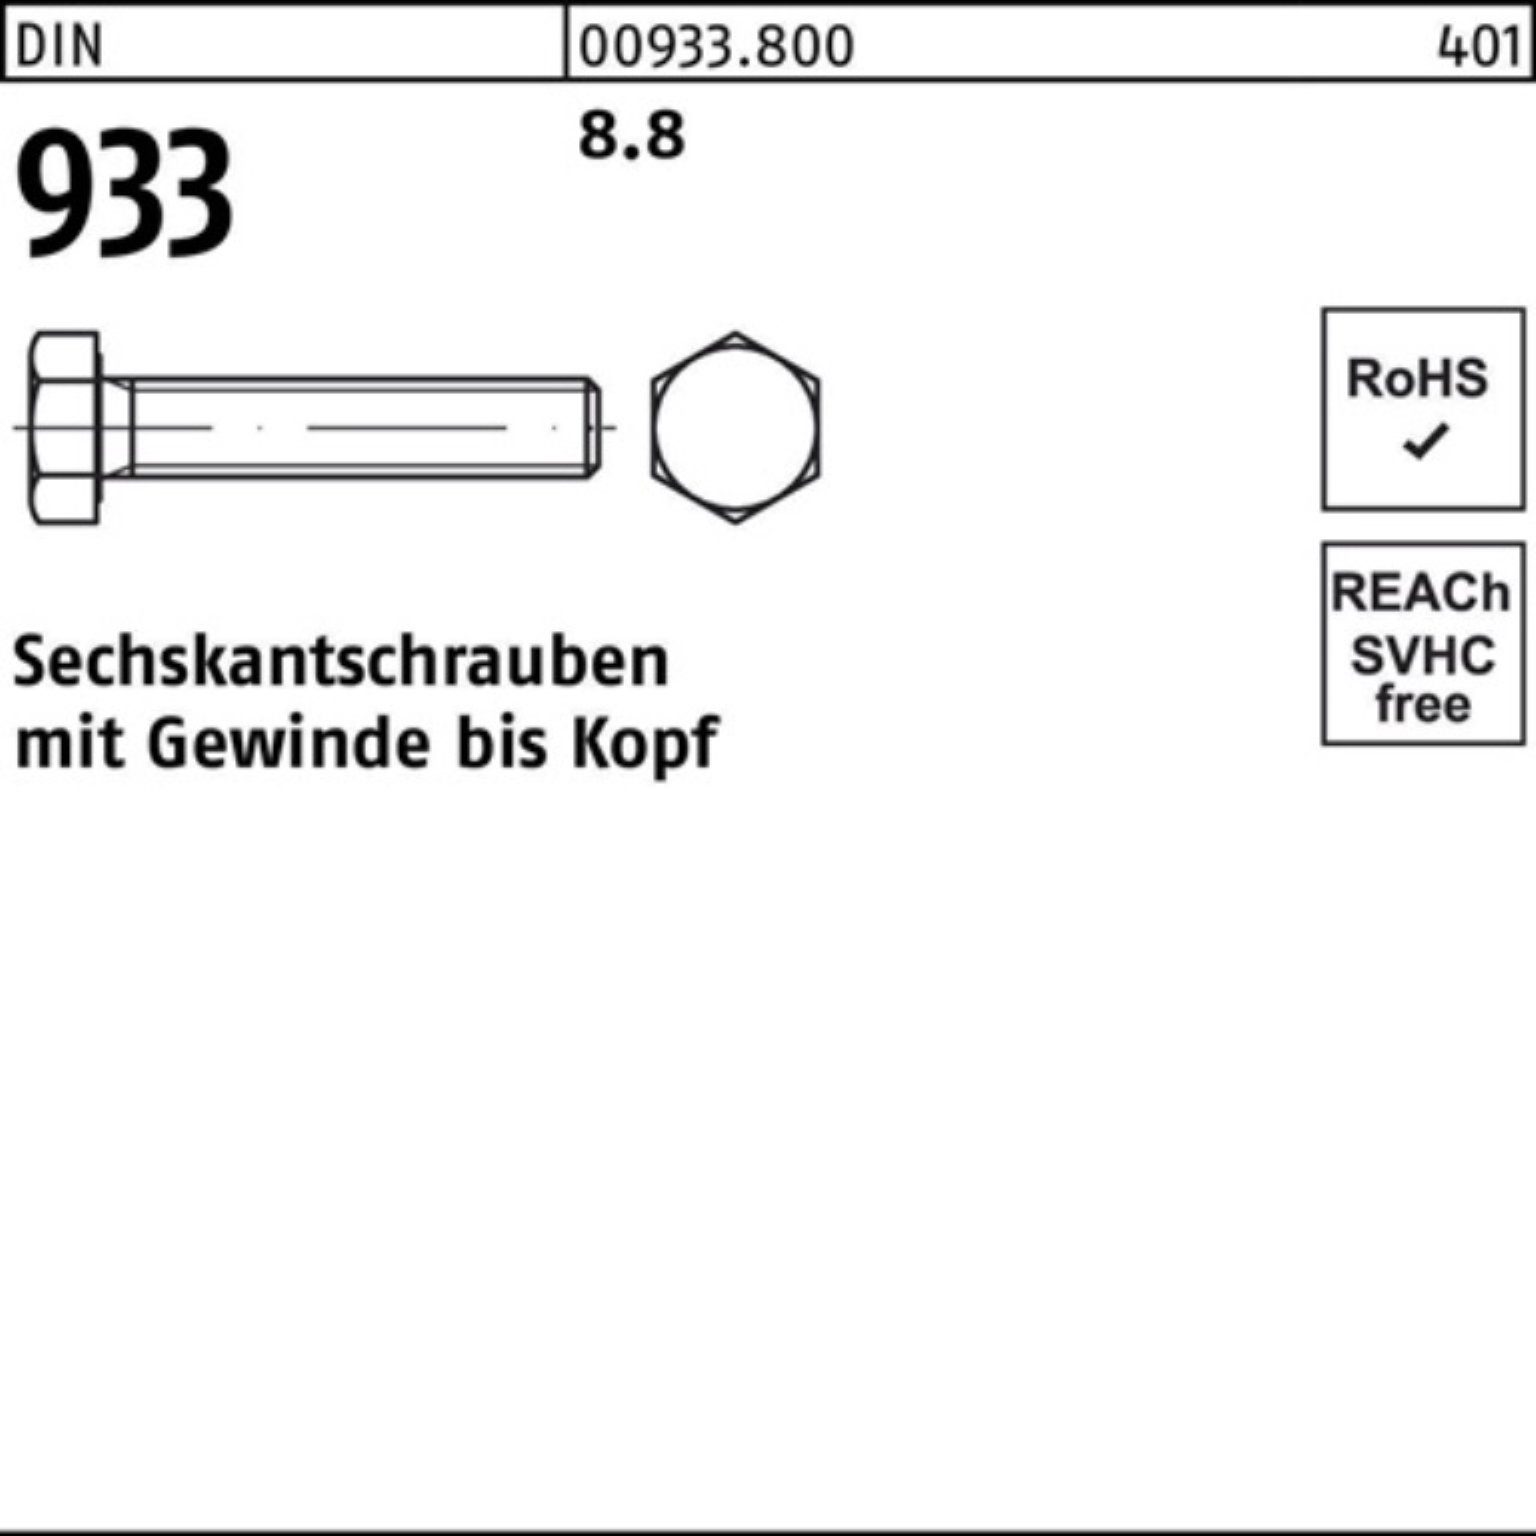 Reyher Sechskantschraube Sechskantschraube Stück 933 100er 1 933 190 Pack DIN M39x 8.8 DIN VG